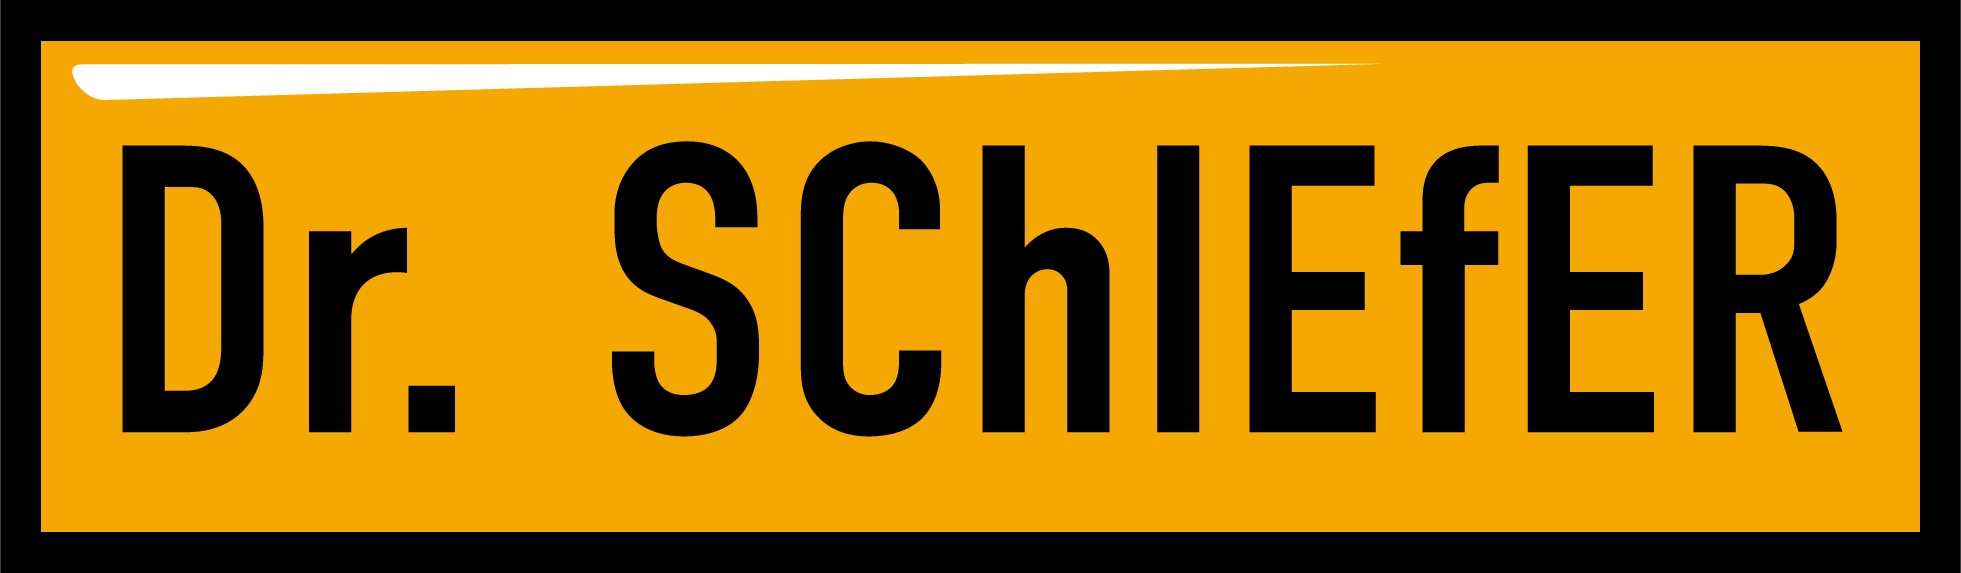 Dr. Schiefer